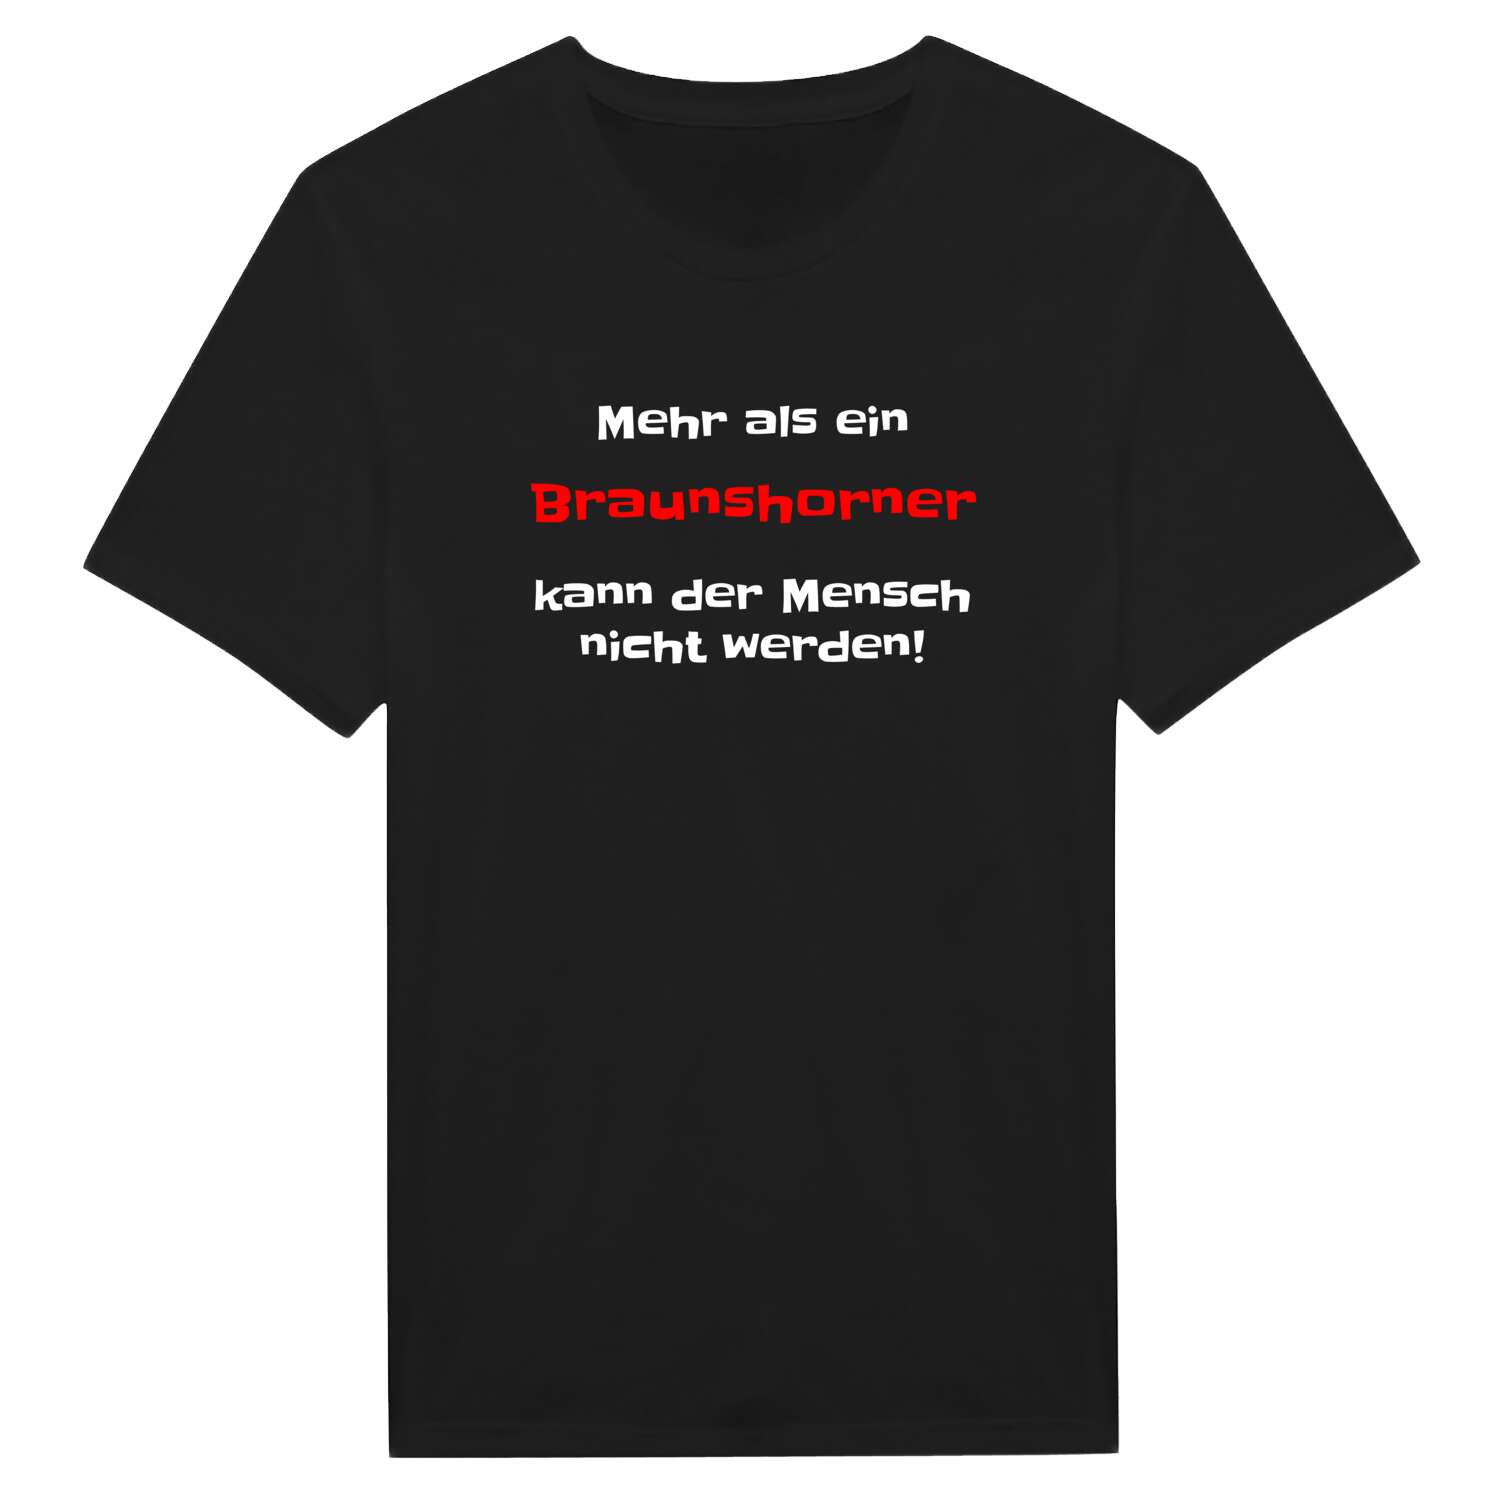 Braunshorn T-Shirt »Mehr als ein«